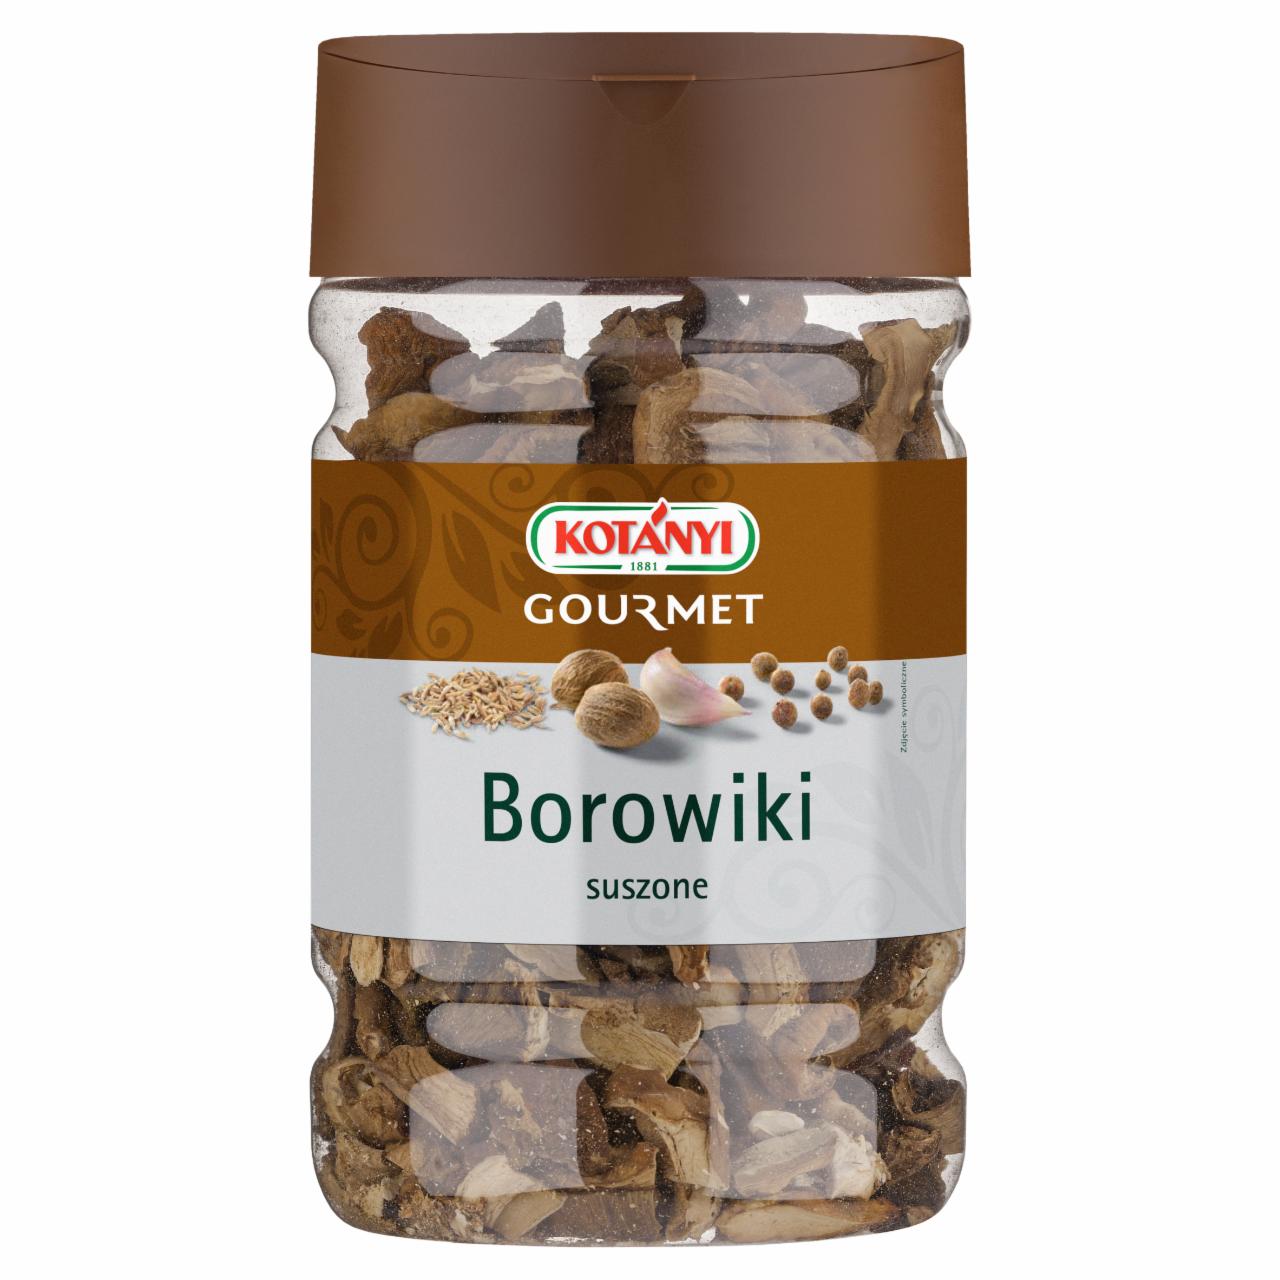 Zdjęcia - Kotányi Gourmet Borowiki suszone 130 g